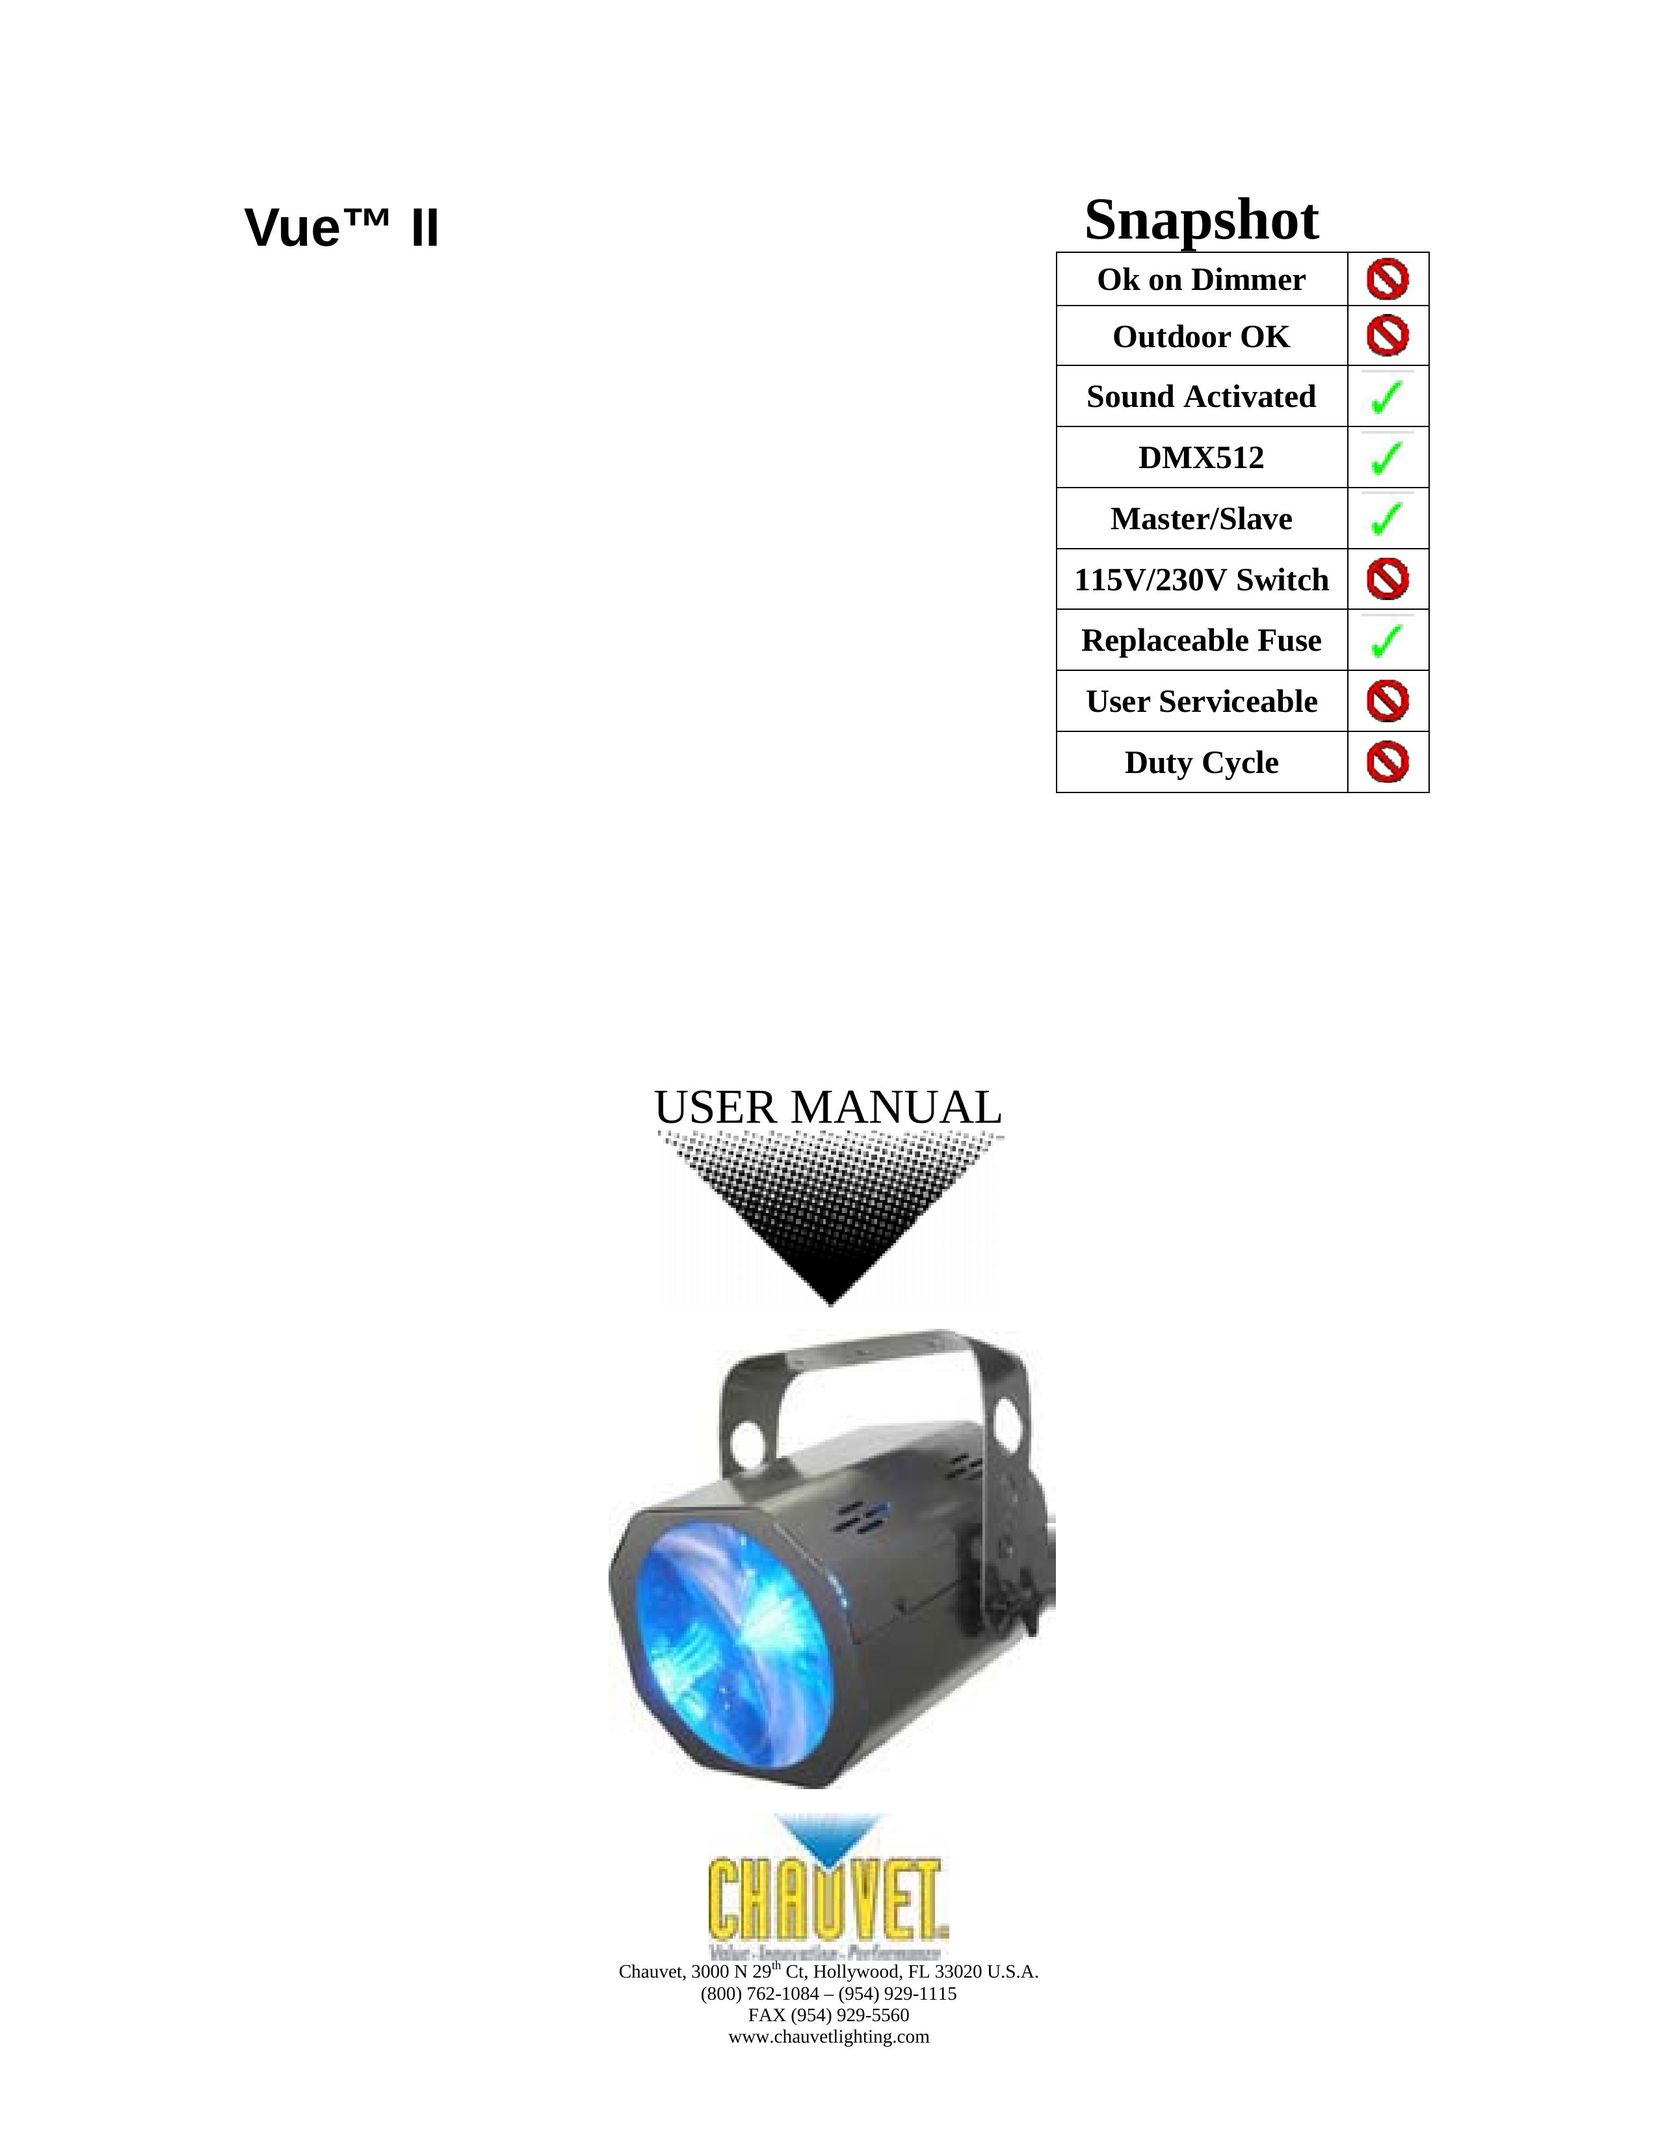 Chauvet Vue II Work Light User Manual